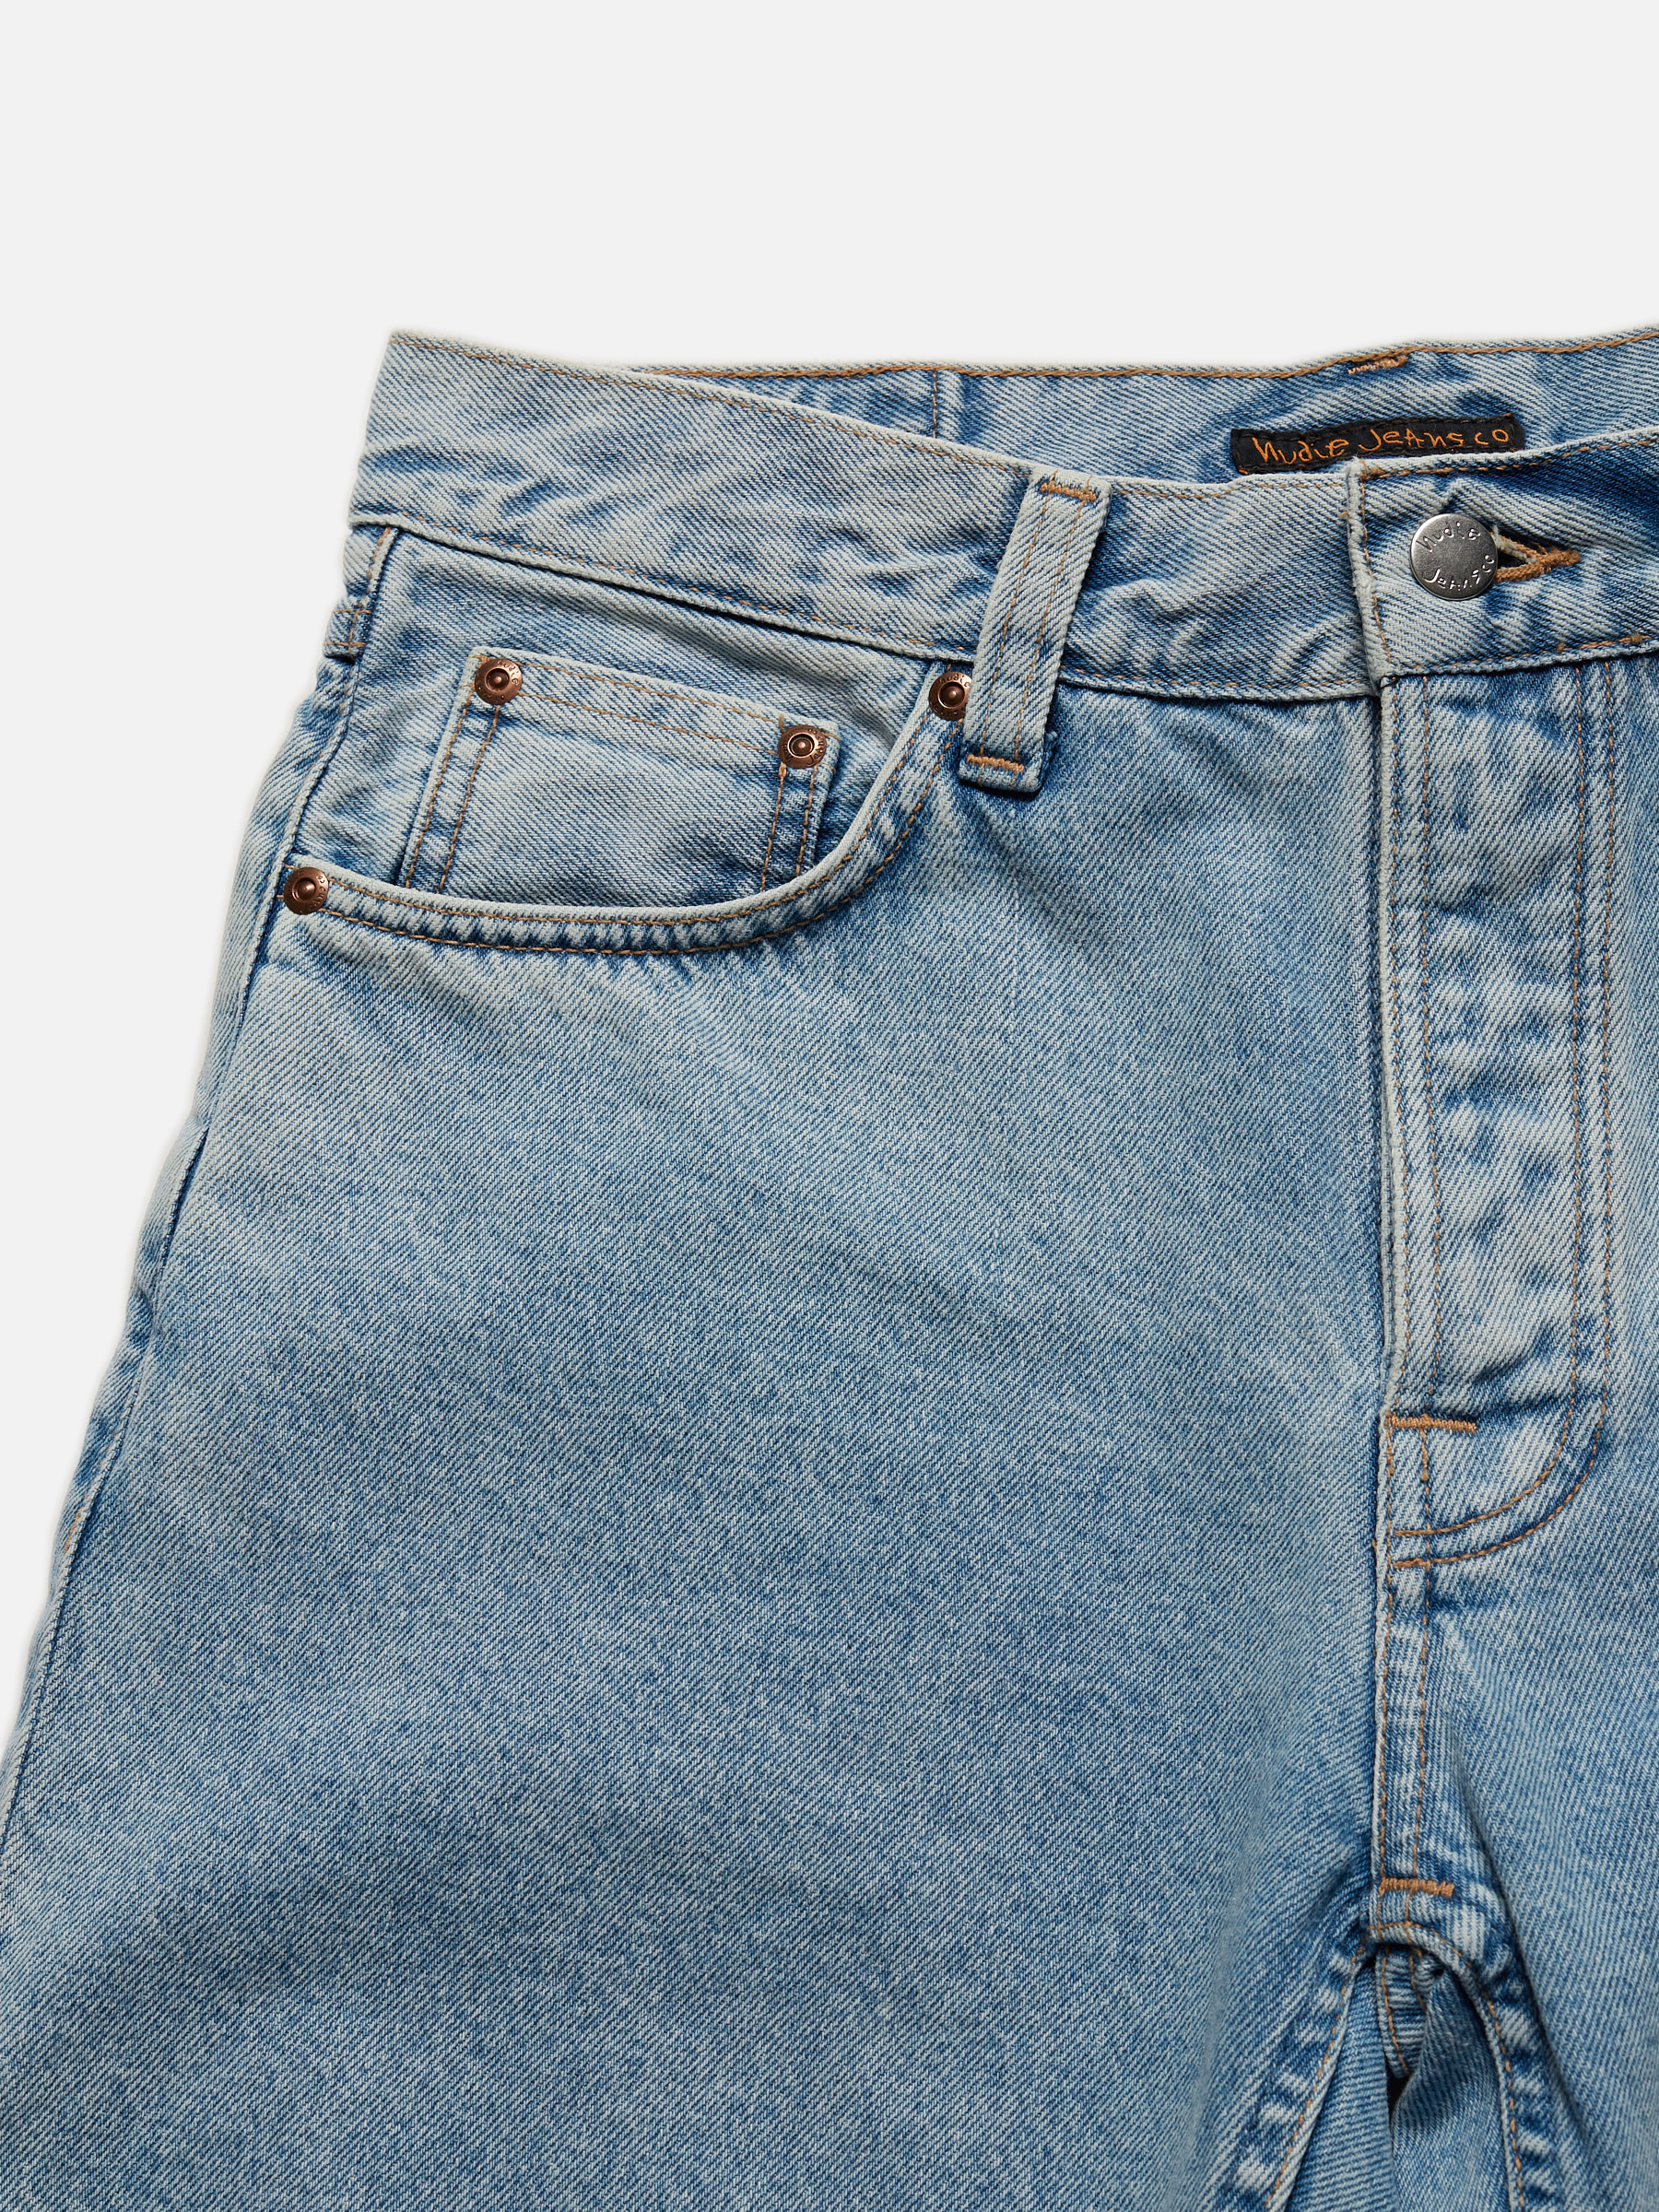 Jeans-Shorts Seth - Sunny Blues